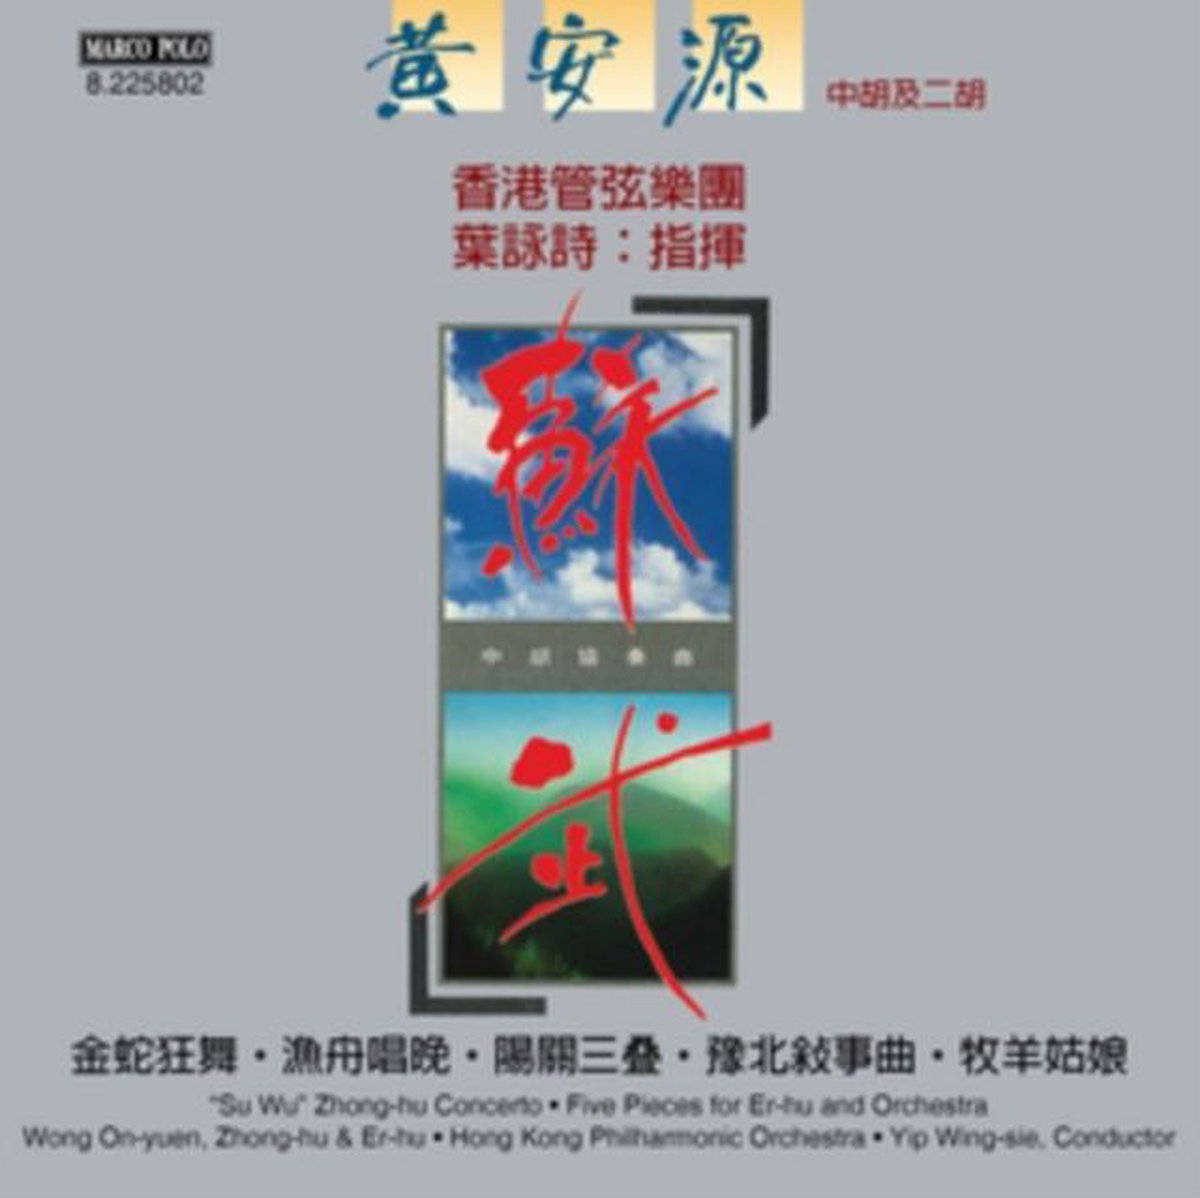 Afbeelding van product "Su Wu" Zhong-hu Concerto; Five Pieces for Er-hu  - Wong On-Yuen